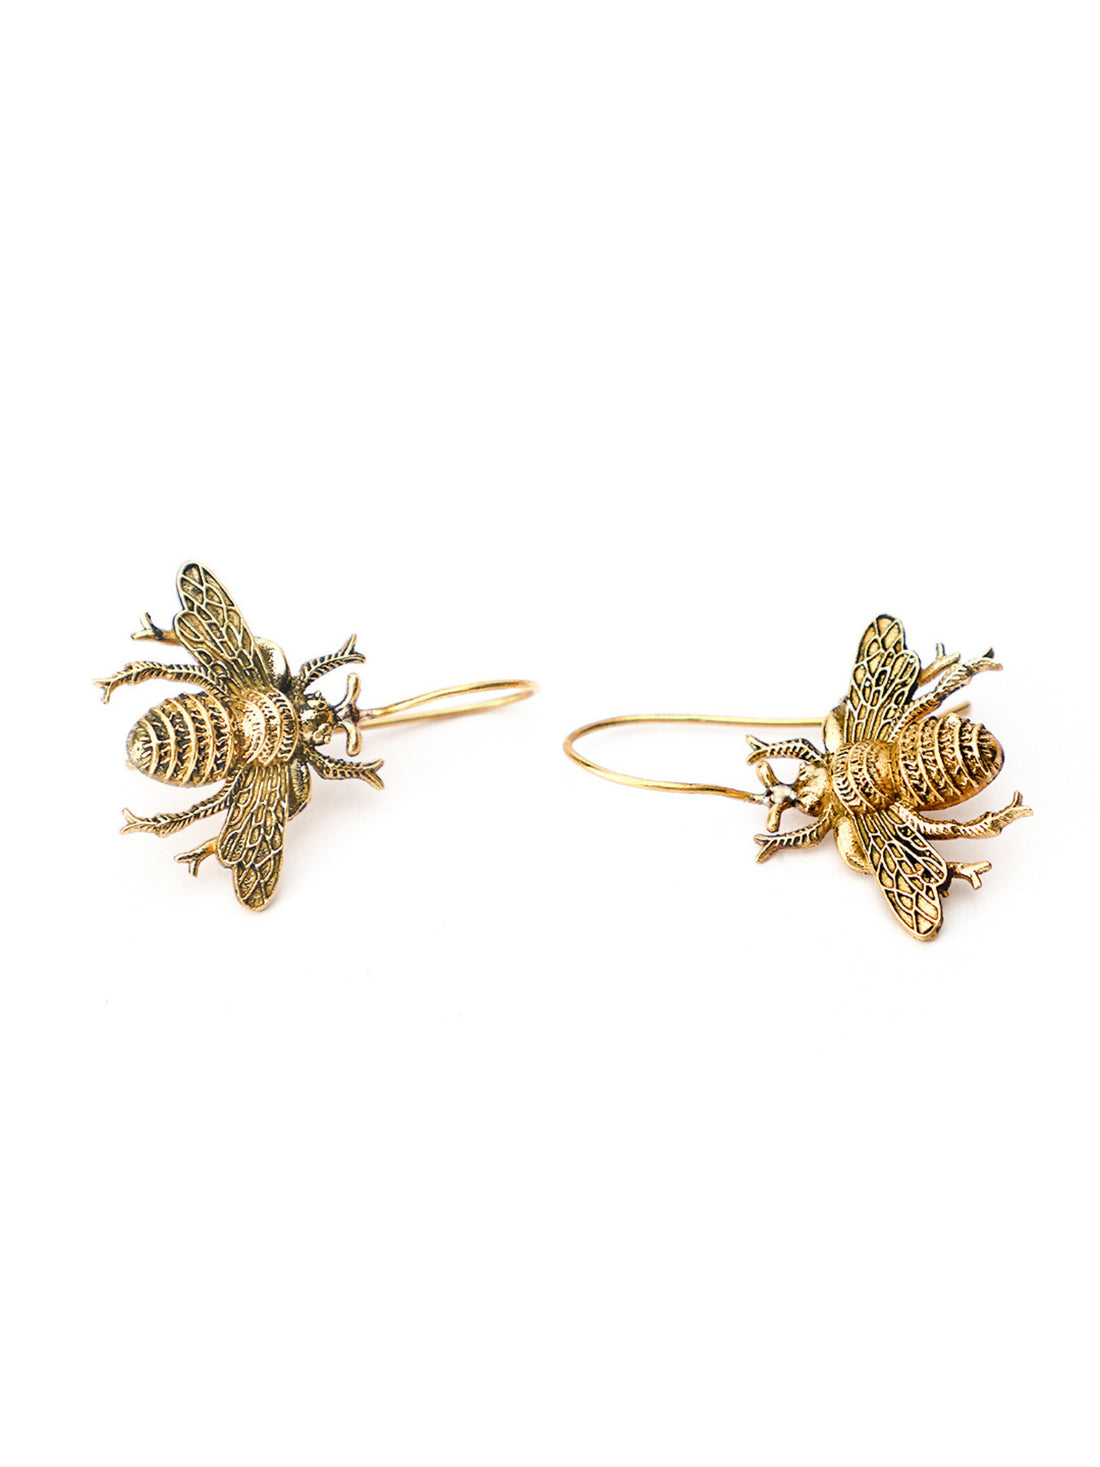 Party Wear Drops & Danglers Earrings - Western Gold-Plated Brass Earrings By Studio One Love